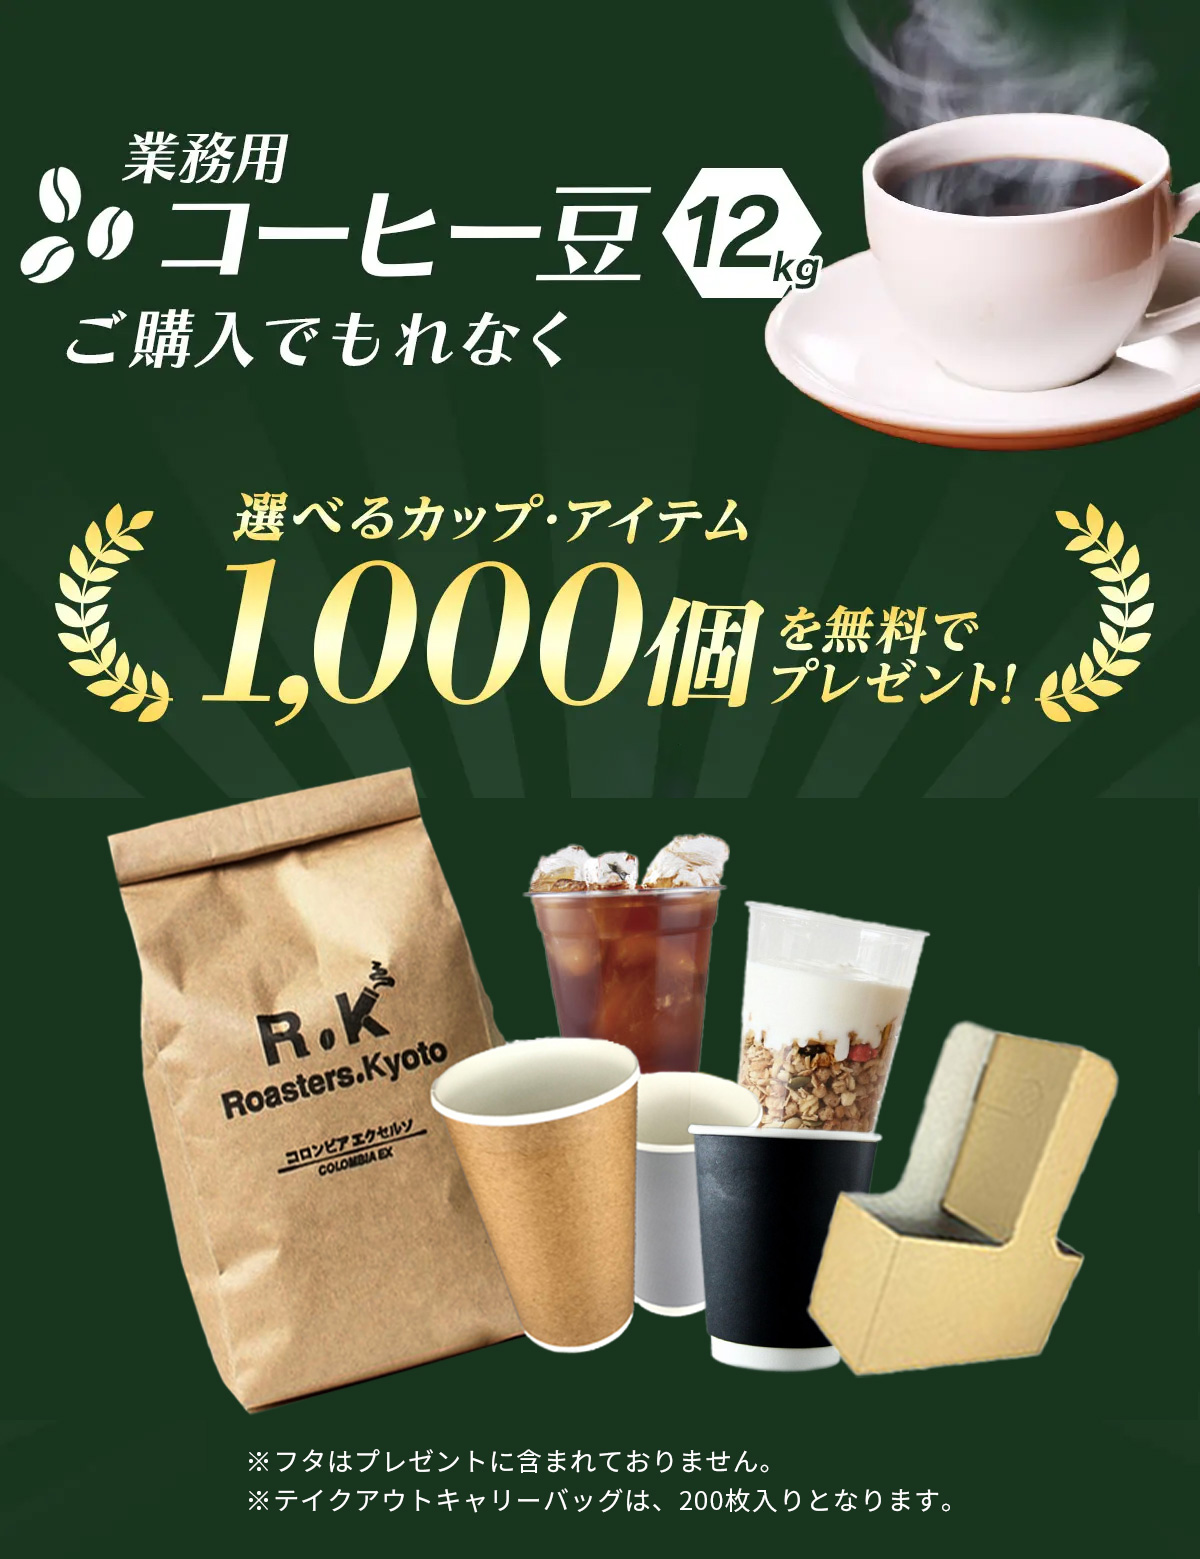 コーヒー豆12kgご購入でテイクアウト資材を無料プレゼント